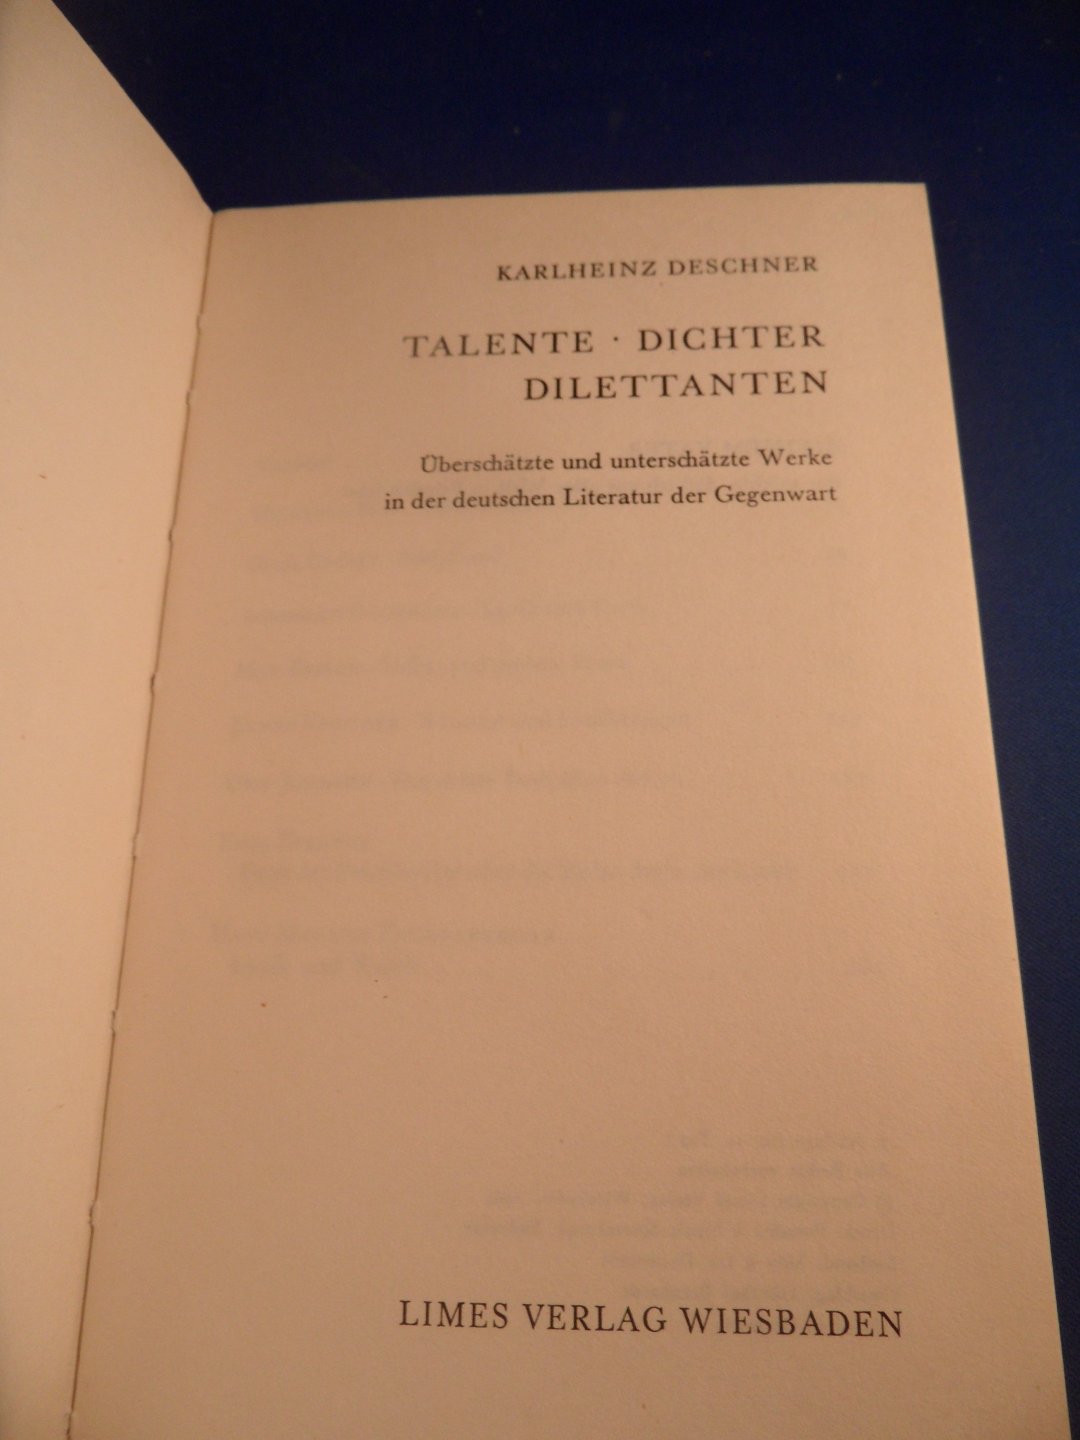 Deschner, Karlheinz - Talente Dichter Dilettanten